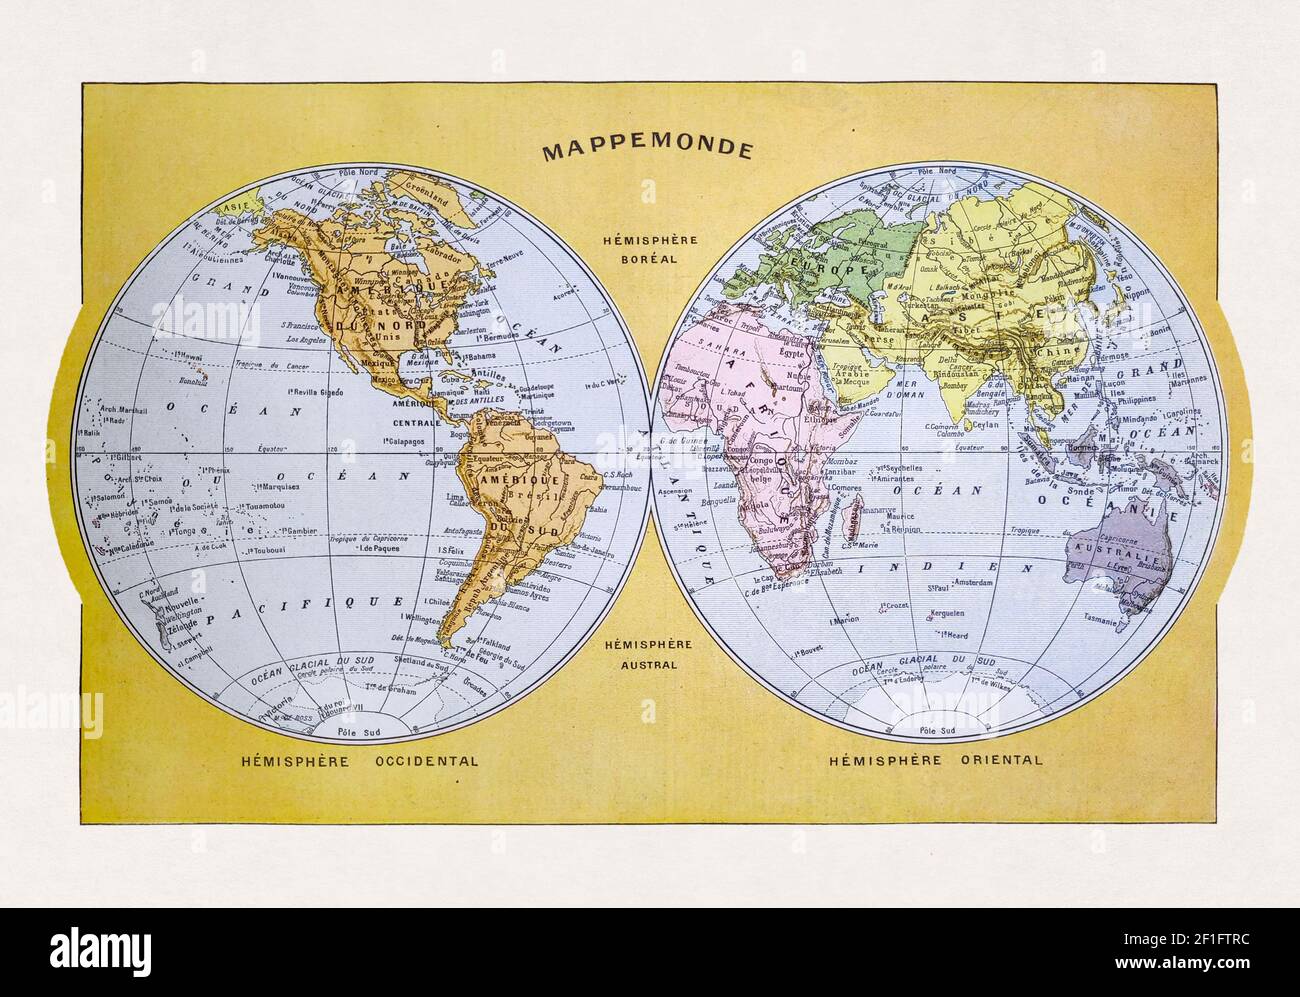 Mappa del mondo antico stampata nel dizionario francese 'Dictionnaire complet Illustré' dall'editore Larousse nel 1889. Foto Stock